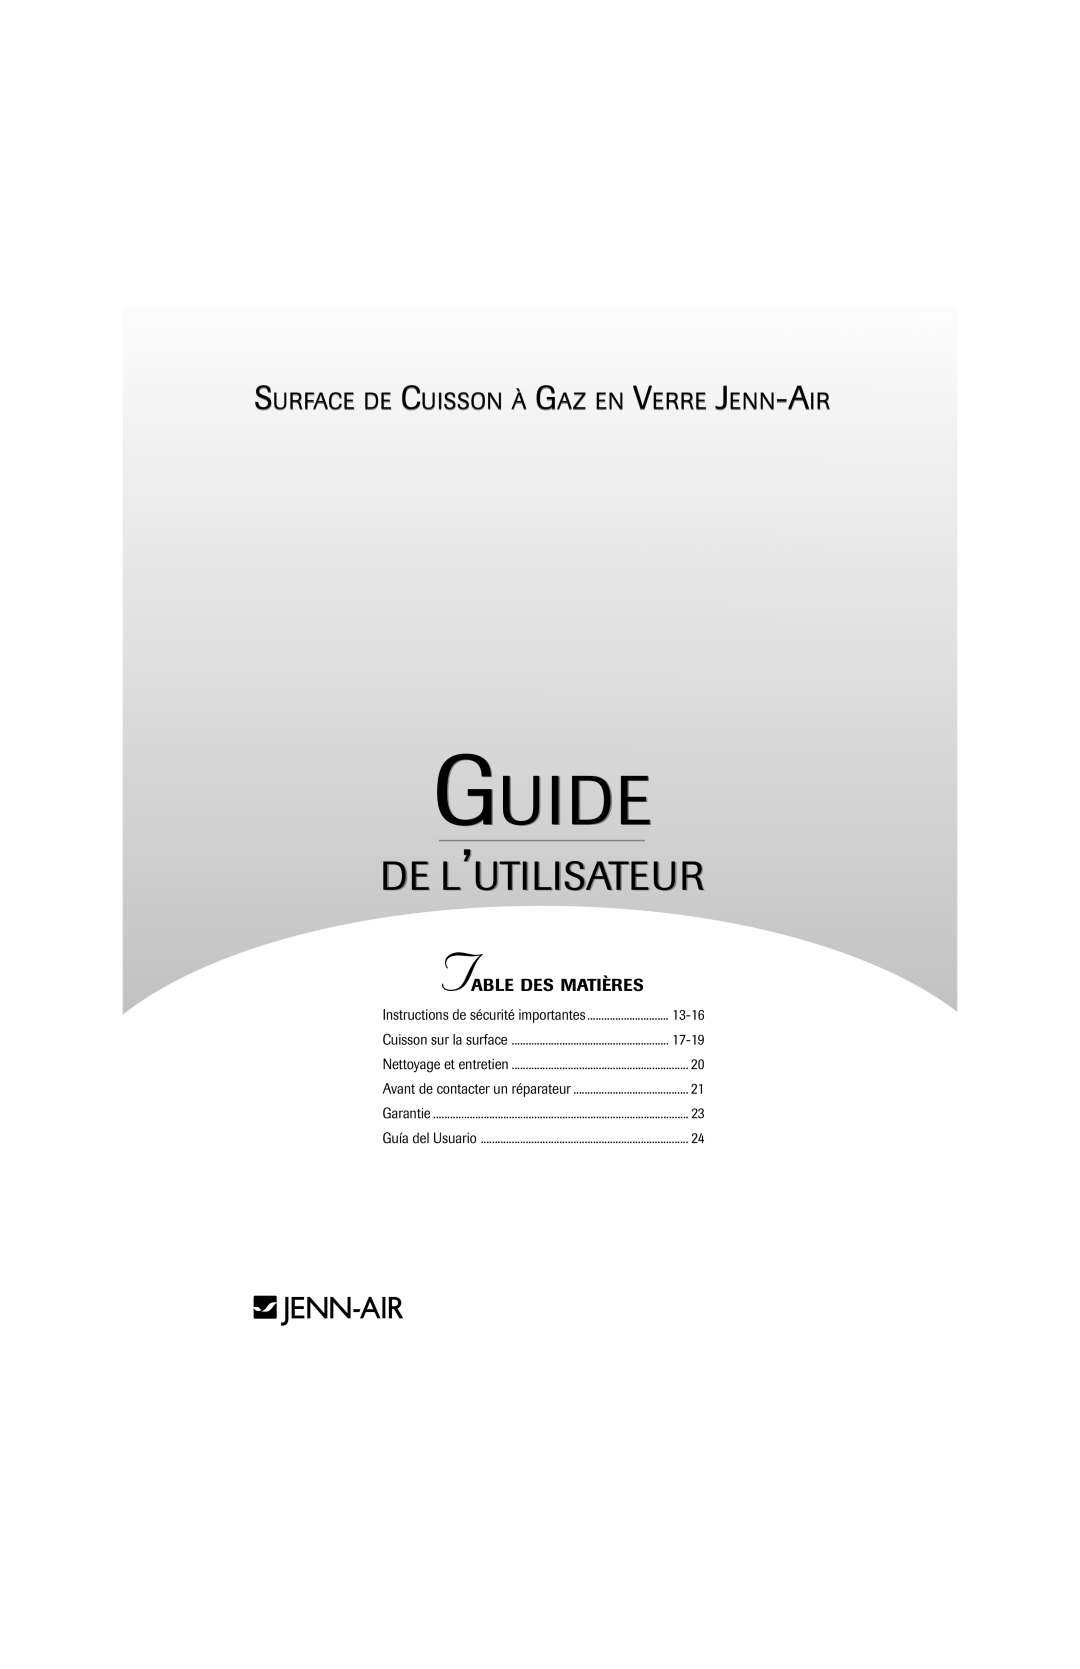 Jenn-Air 8112P341-60 Guide, De L’Utilisateur, Surface De Cuisson À Gaz En Verre Jenn-Air, Table Des Matières, Garantie 